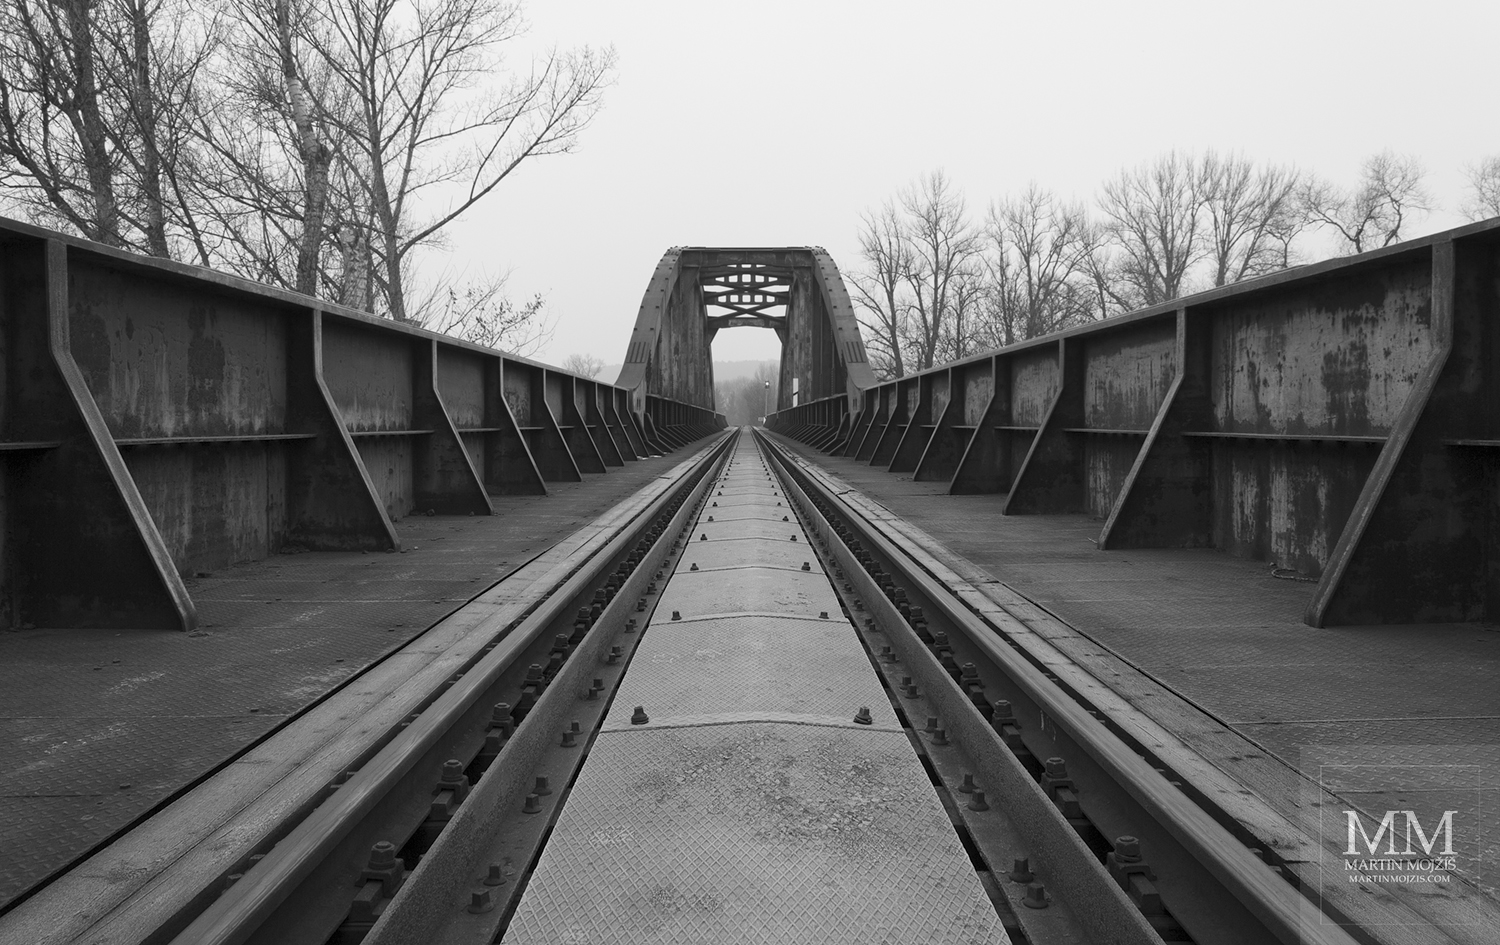 Mohutné zábradlí ocelového železničního mostu. Umělecká černobílá fotografie Martina Mojžíše s názvem TICHEM K VEČERU.